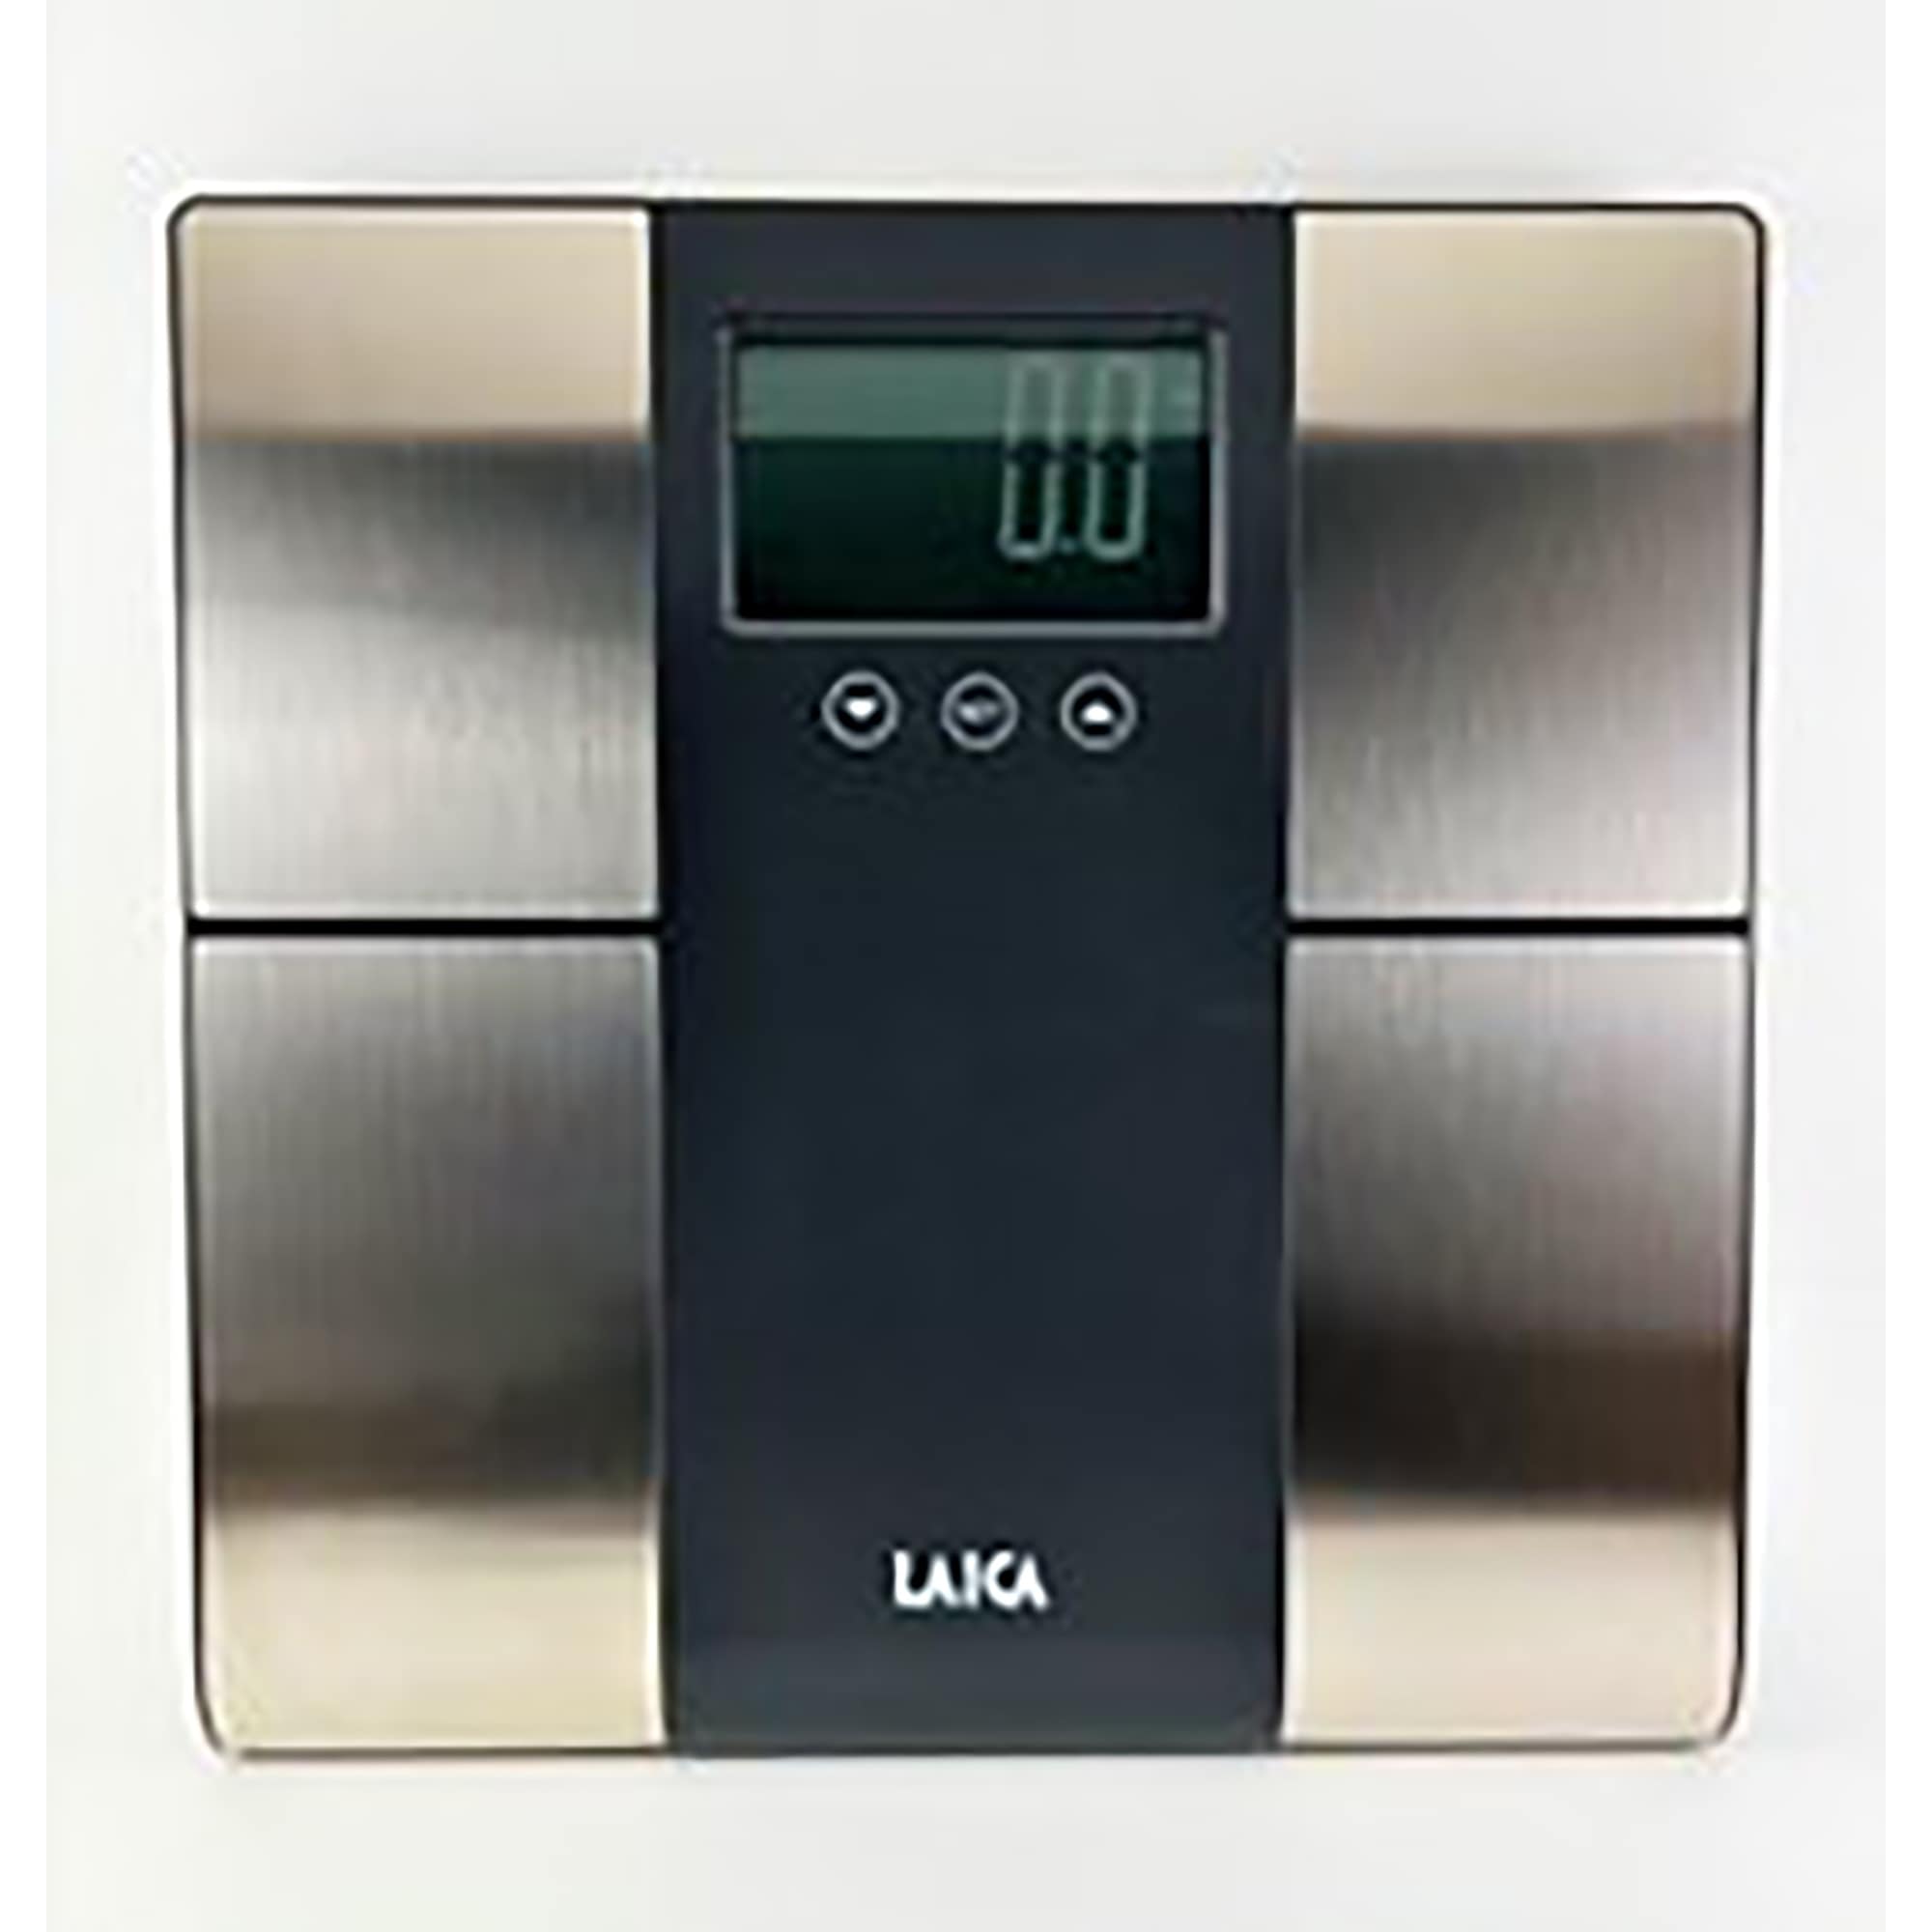 LAICA 500 lbs Body Analzyer Digital Bath Scale - Medium - Bed Bath & Beyond  - 33453282